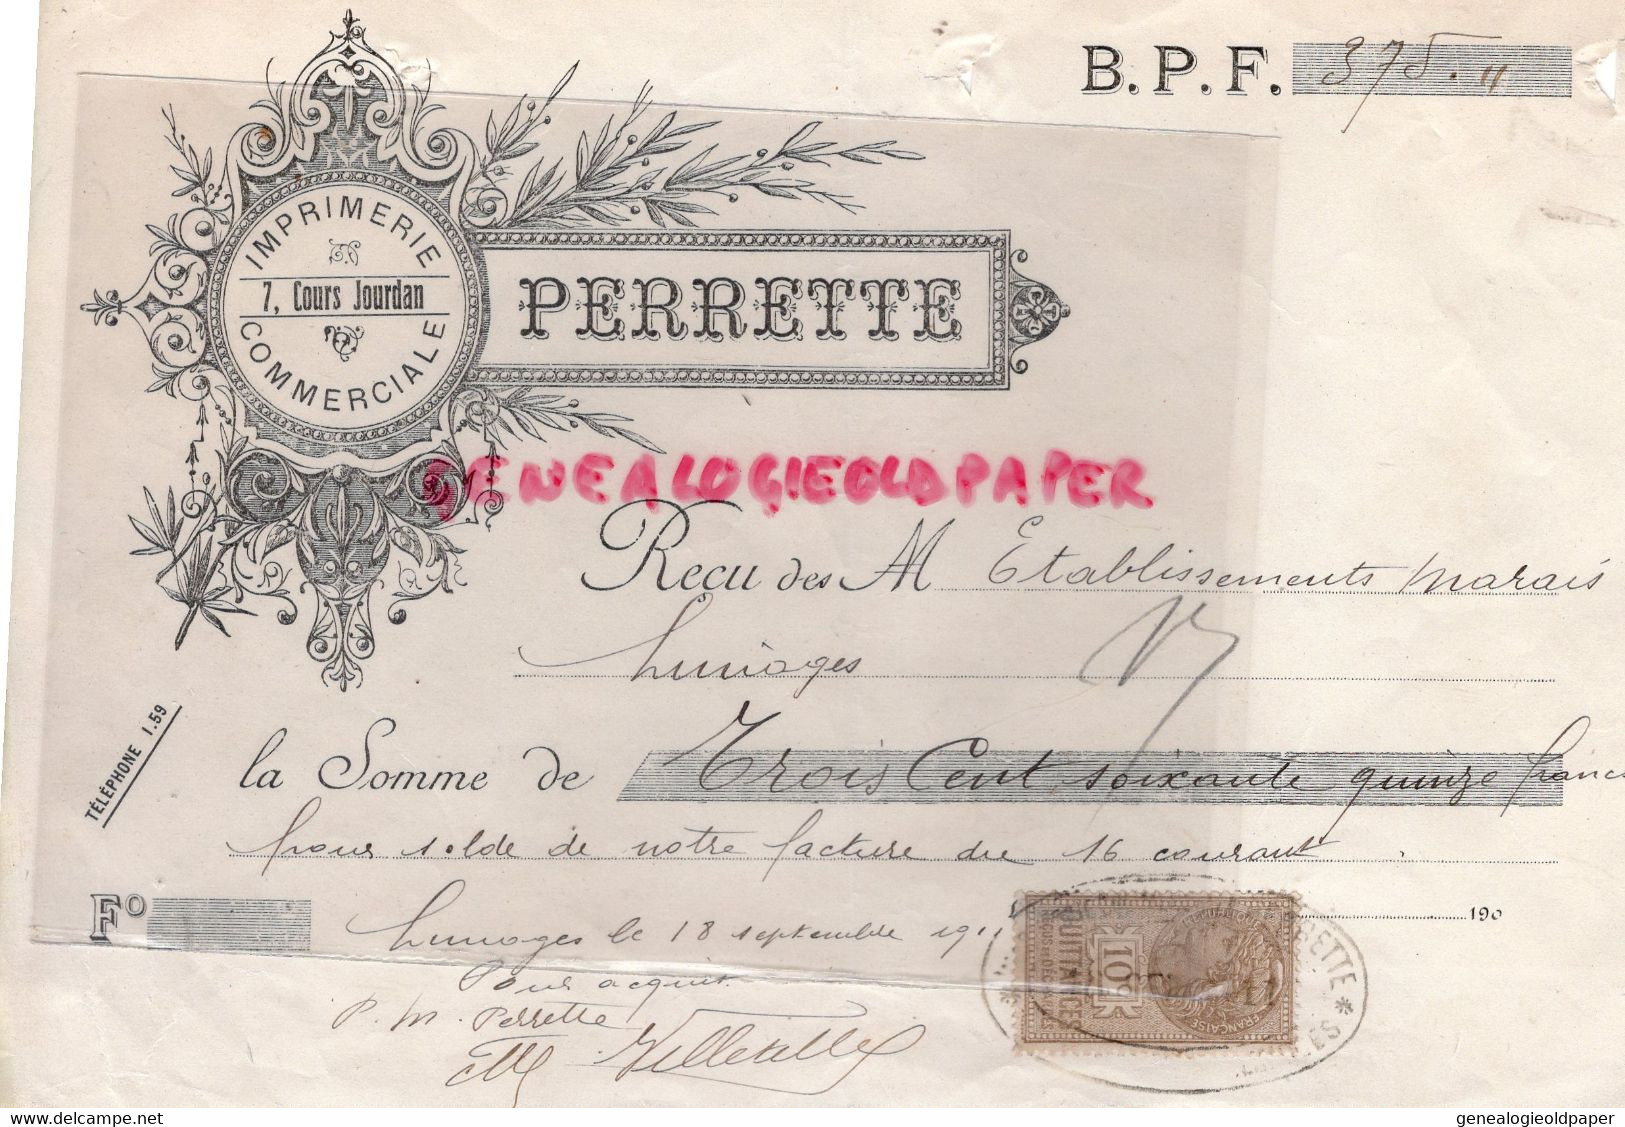 87- LIMOGES- RARE RECU IMPRIMERIE PERRETTE - 7 COURS JOURDAN- ETS MARAIS  1910 - Printing & Stationeries